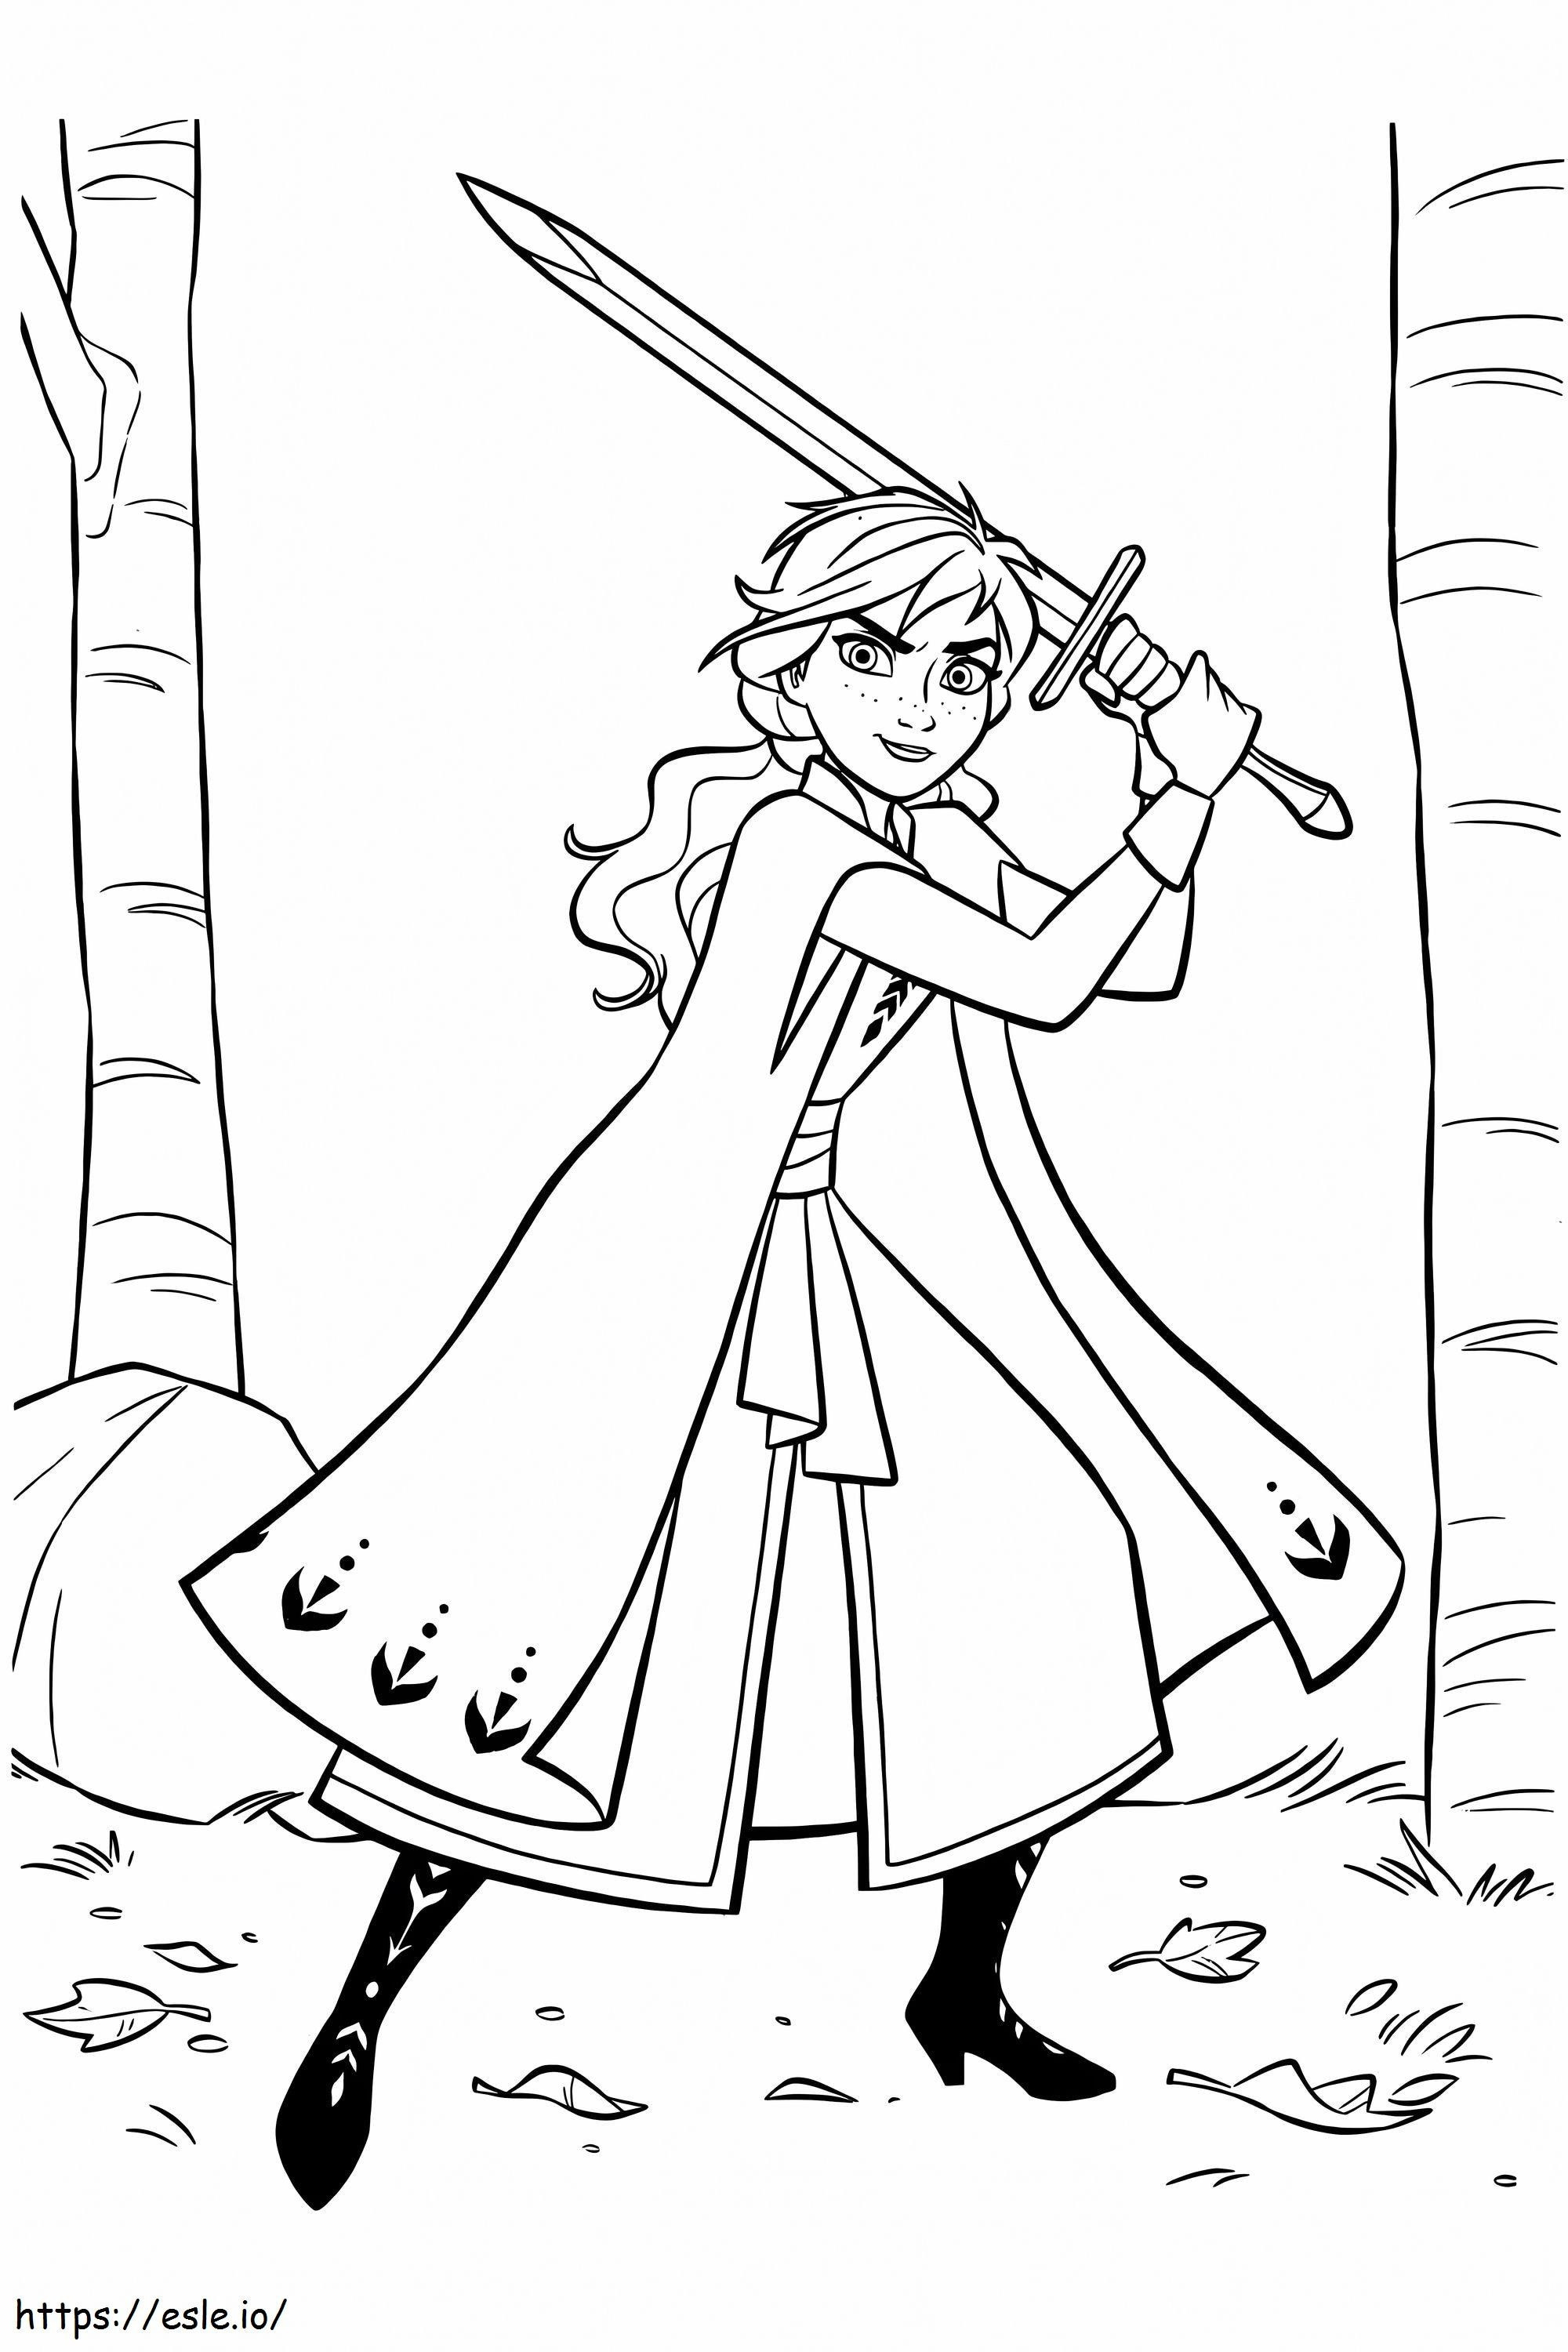 Anna mit Schwert ausmalbilder